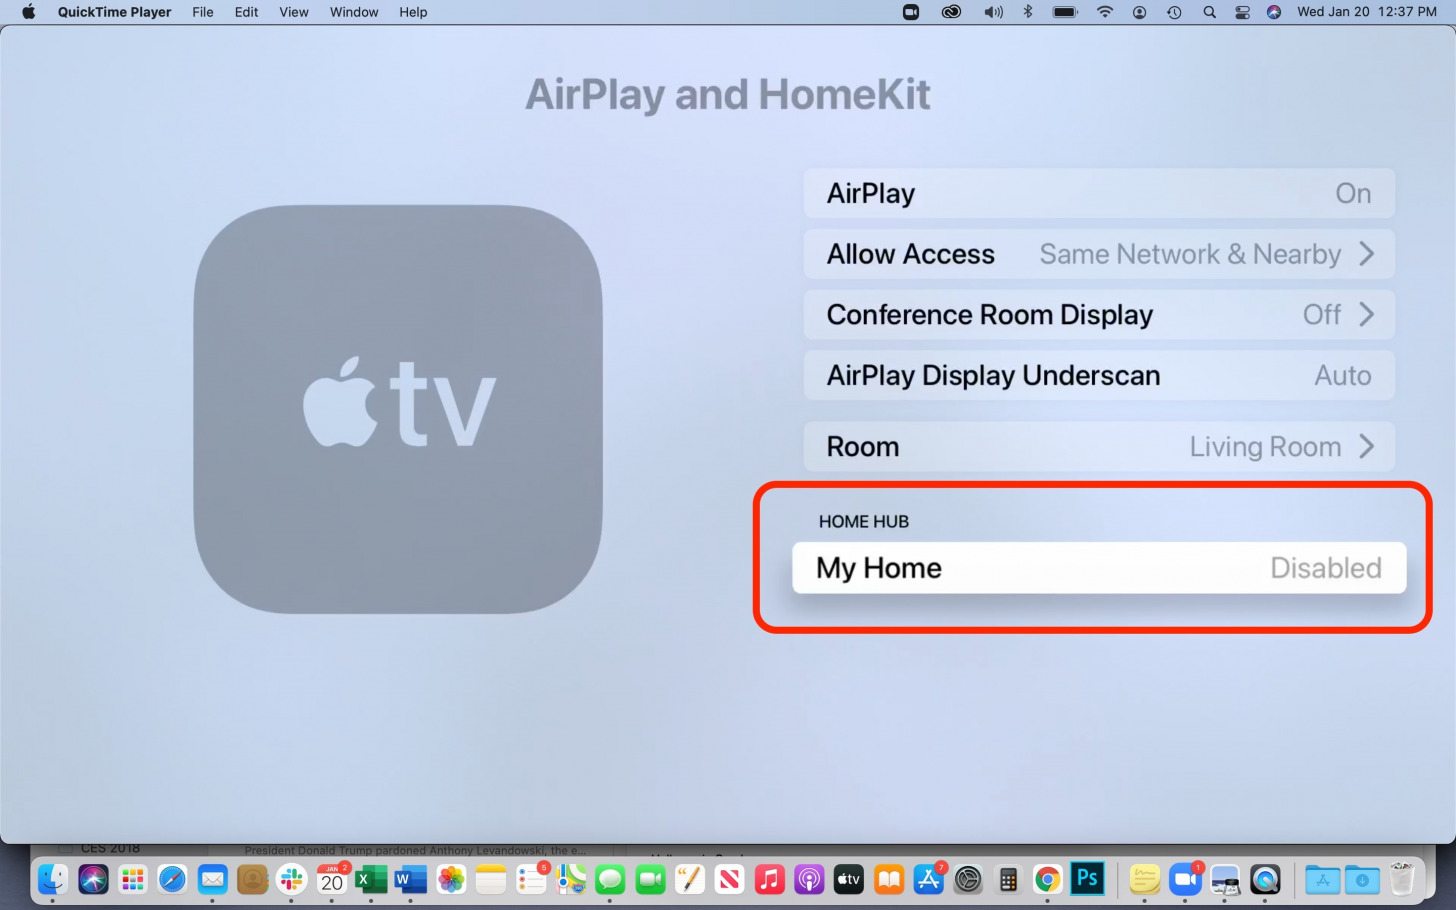 Su hogar dirá Deshabilitado cuando su Apple TV ya no sea el Hub